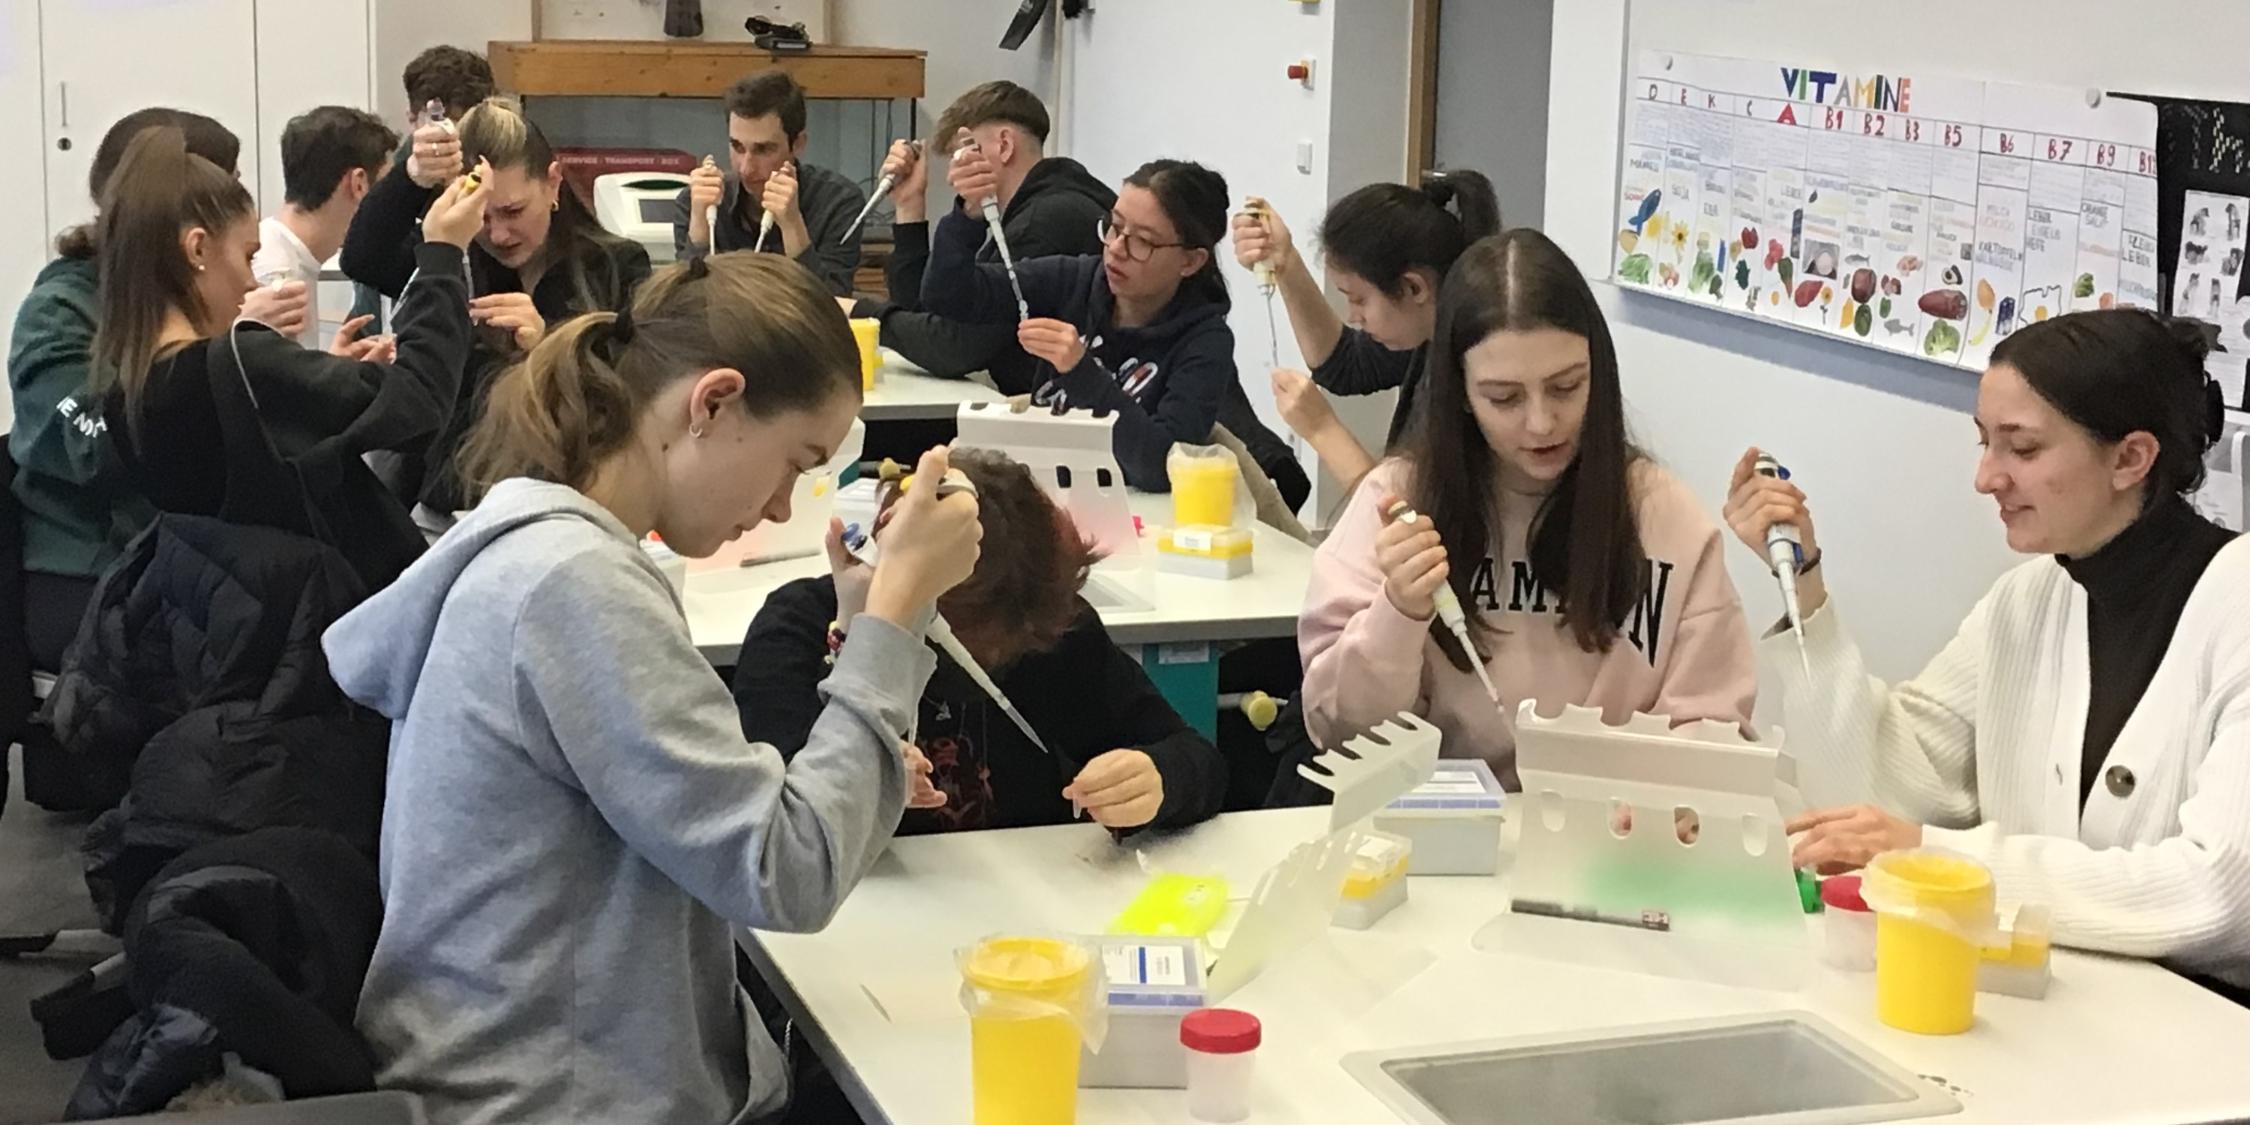 Schülerinnen und Schüler arbeiten praktisch zum Genetischen Fingerabdruck.